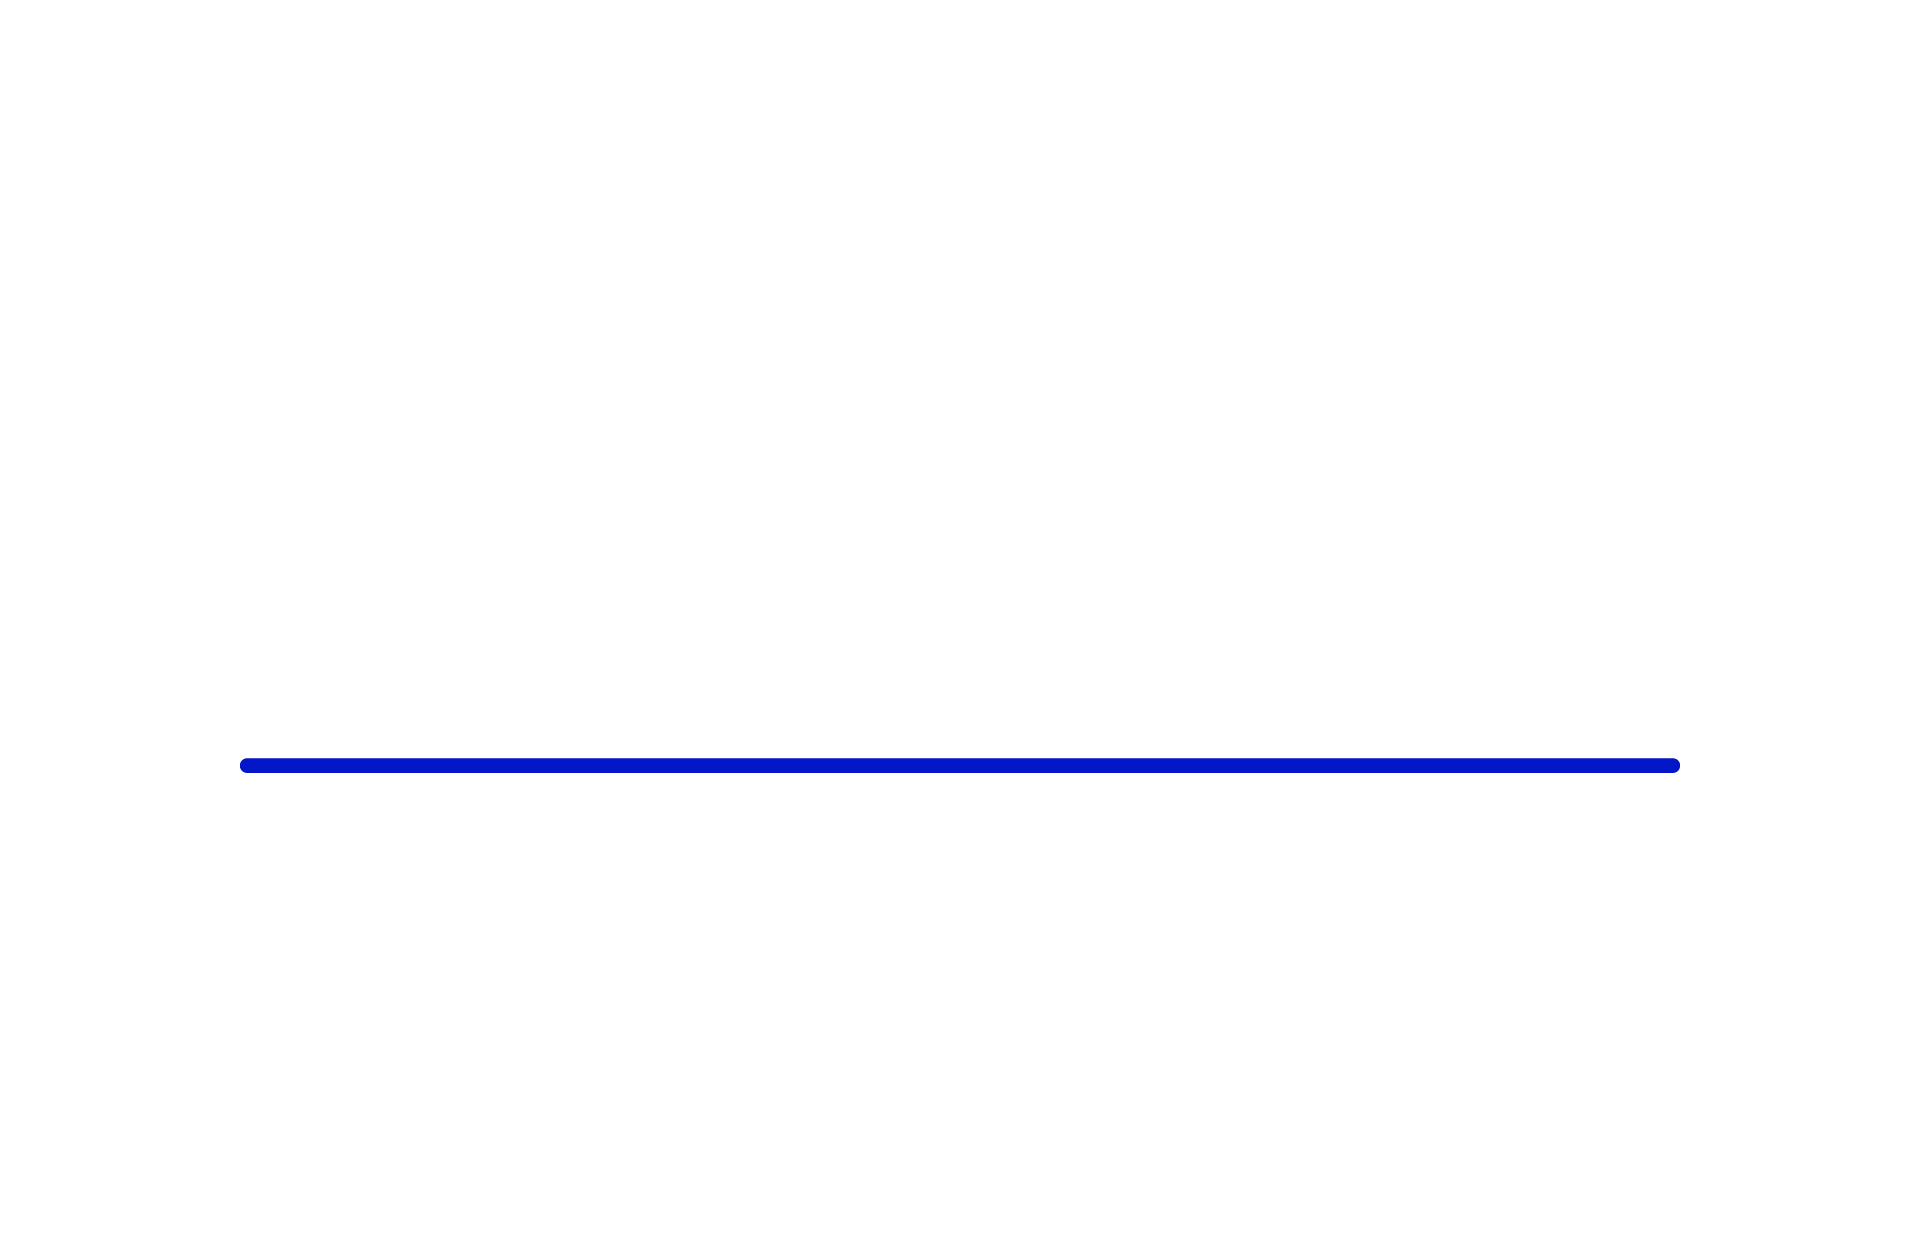 Velvet Innovation